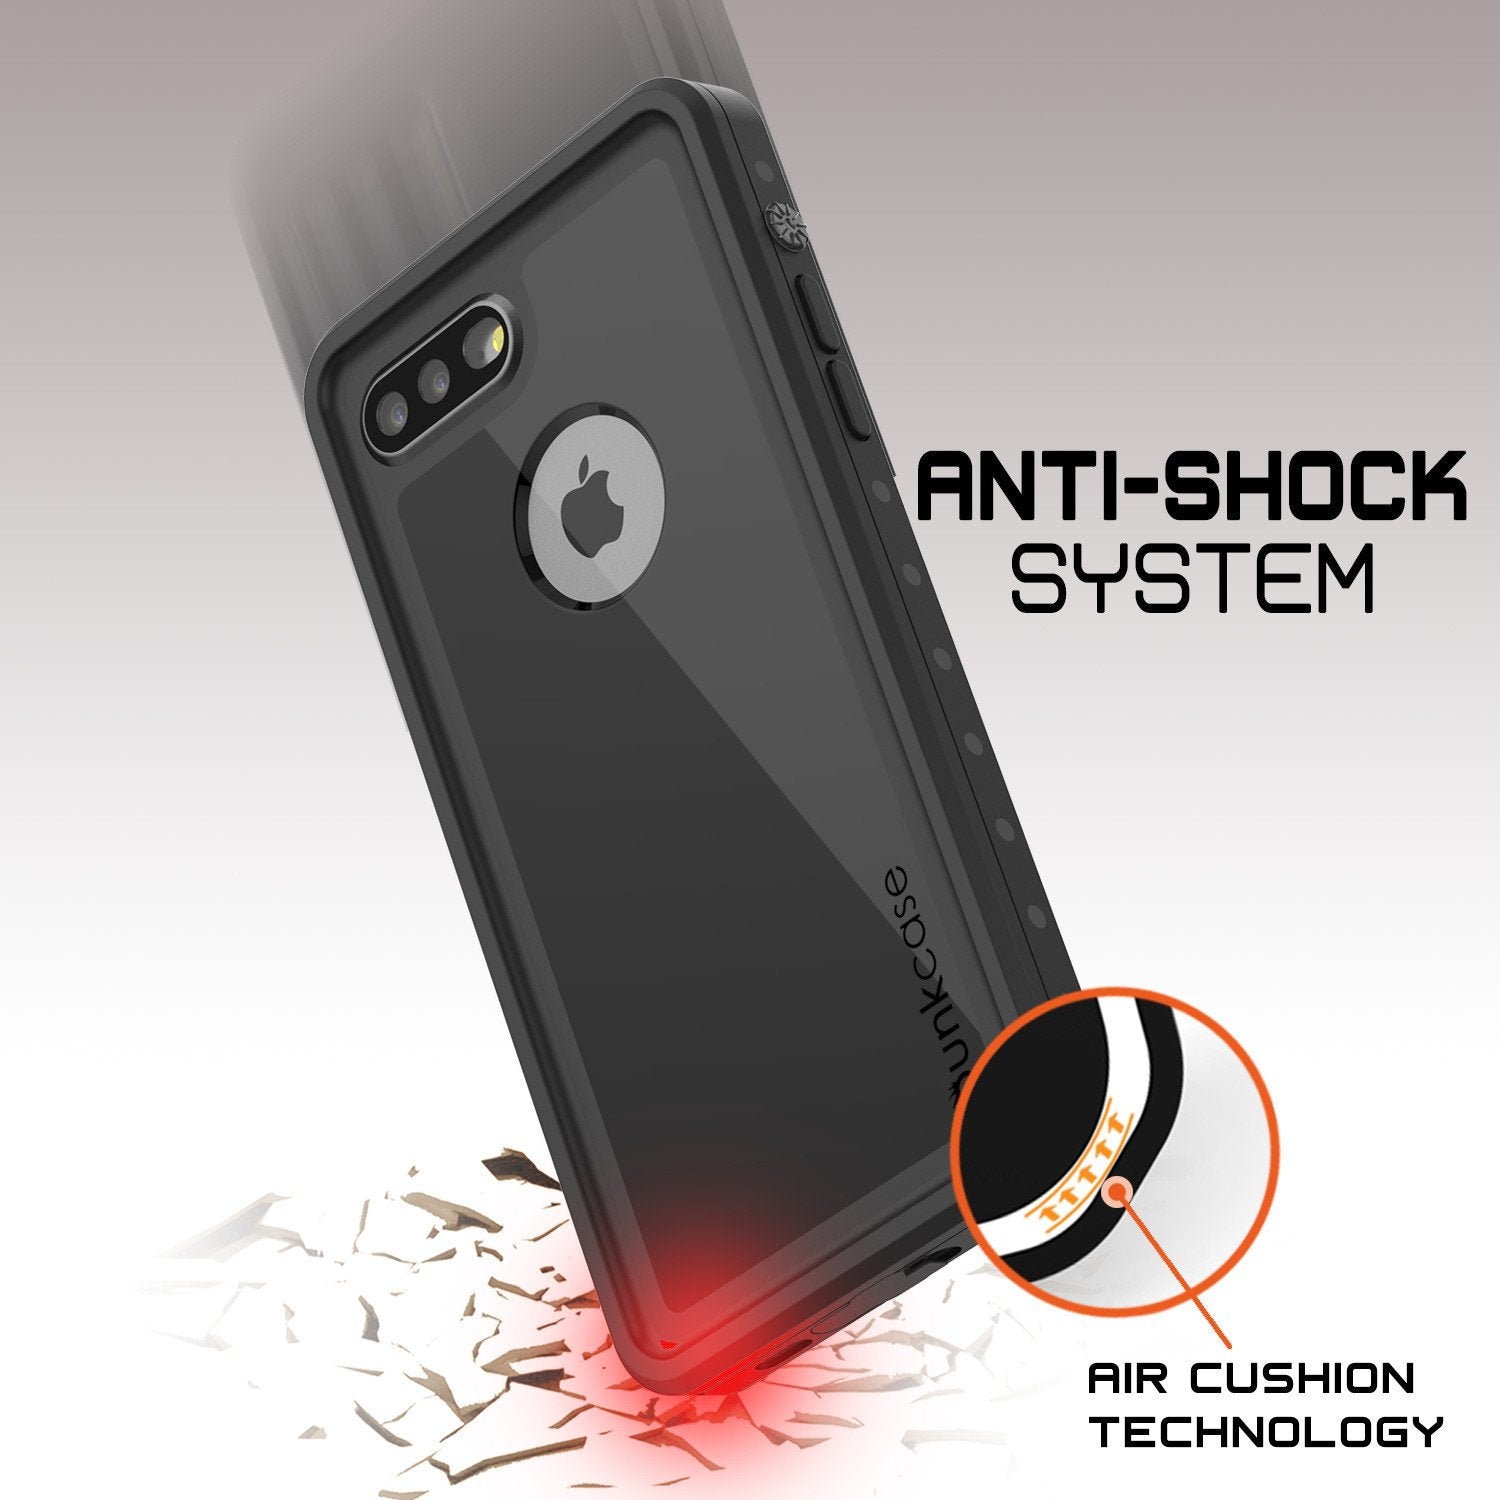 iPhone 7+ Plus Waterproof IP68 Case, Punkcase [Black] [StudStar Series] [Slim Fit] [Dirtproof] - PunkCase NZ